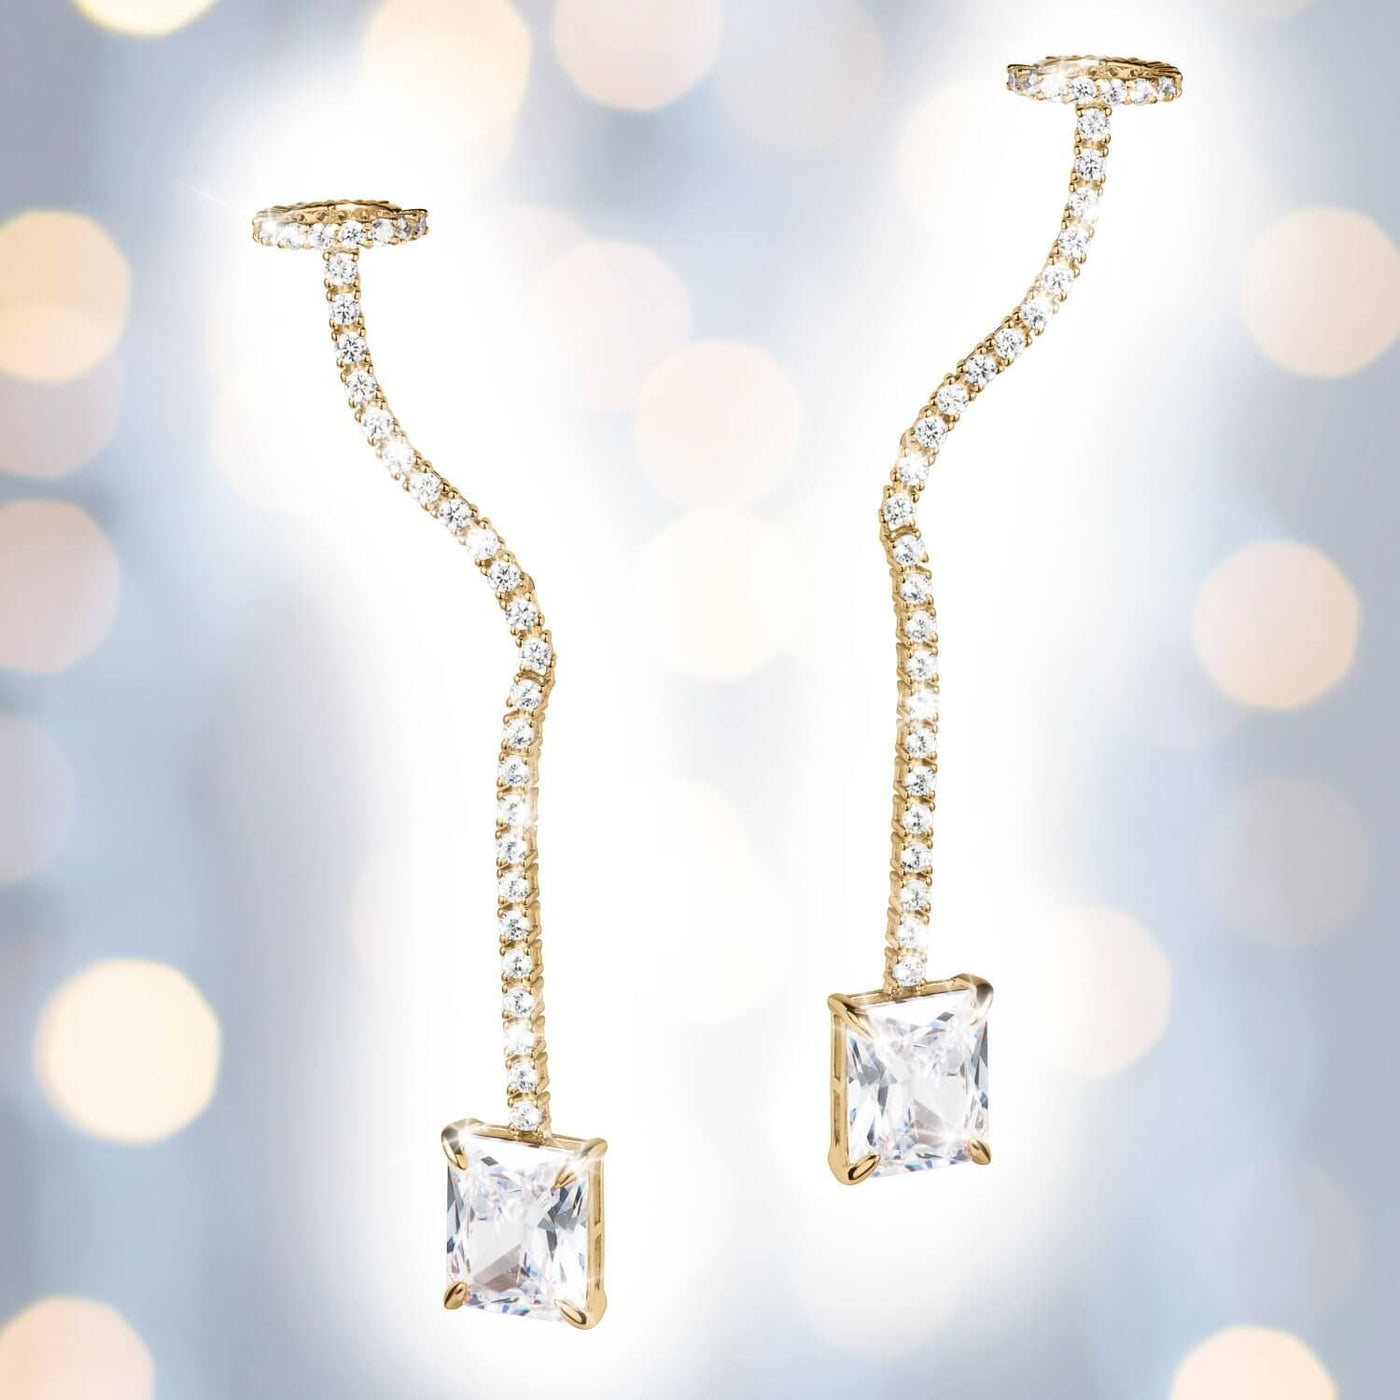 Daniel Steiger Gala Necklace & Imperial Earring Set